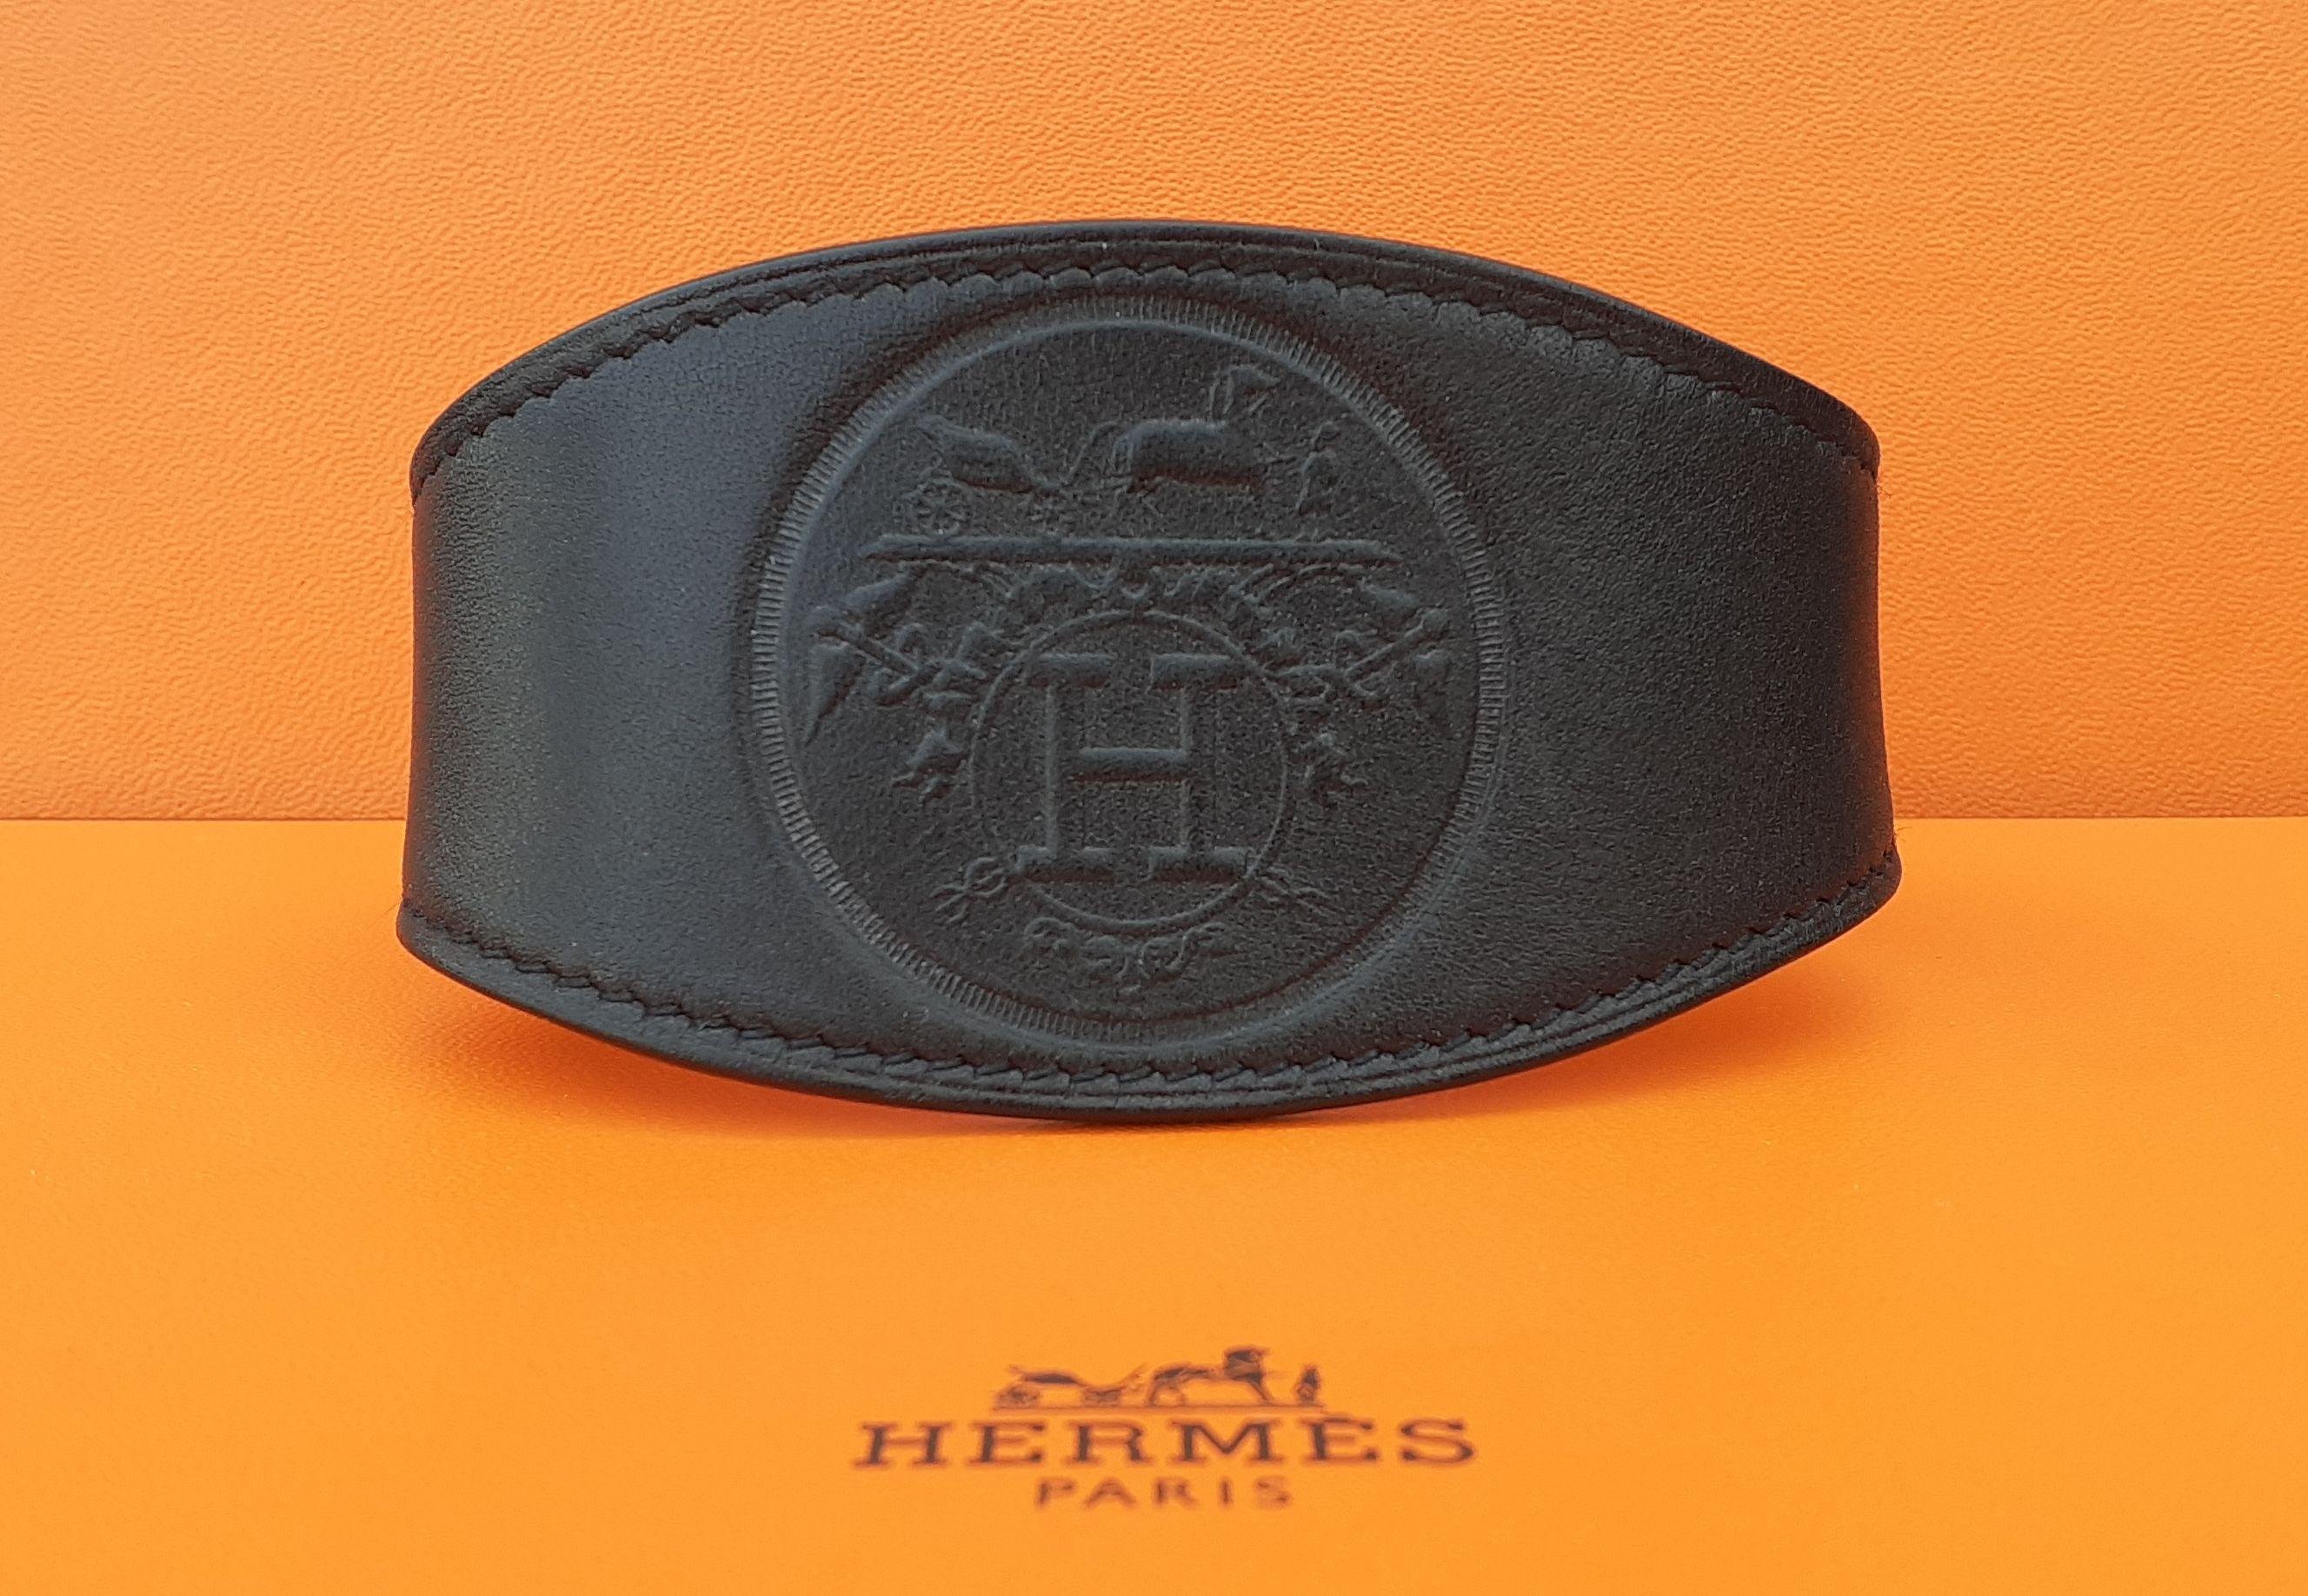 Rare et beau bracelet Hermès authentique

Pour l'homme et la femme

Motif : 